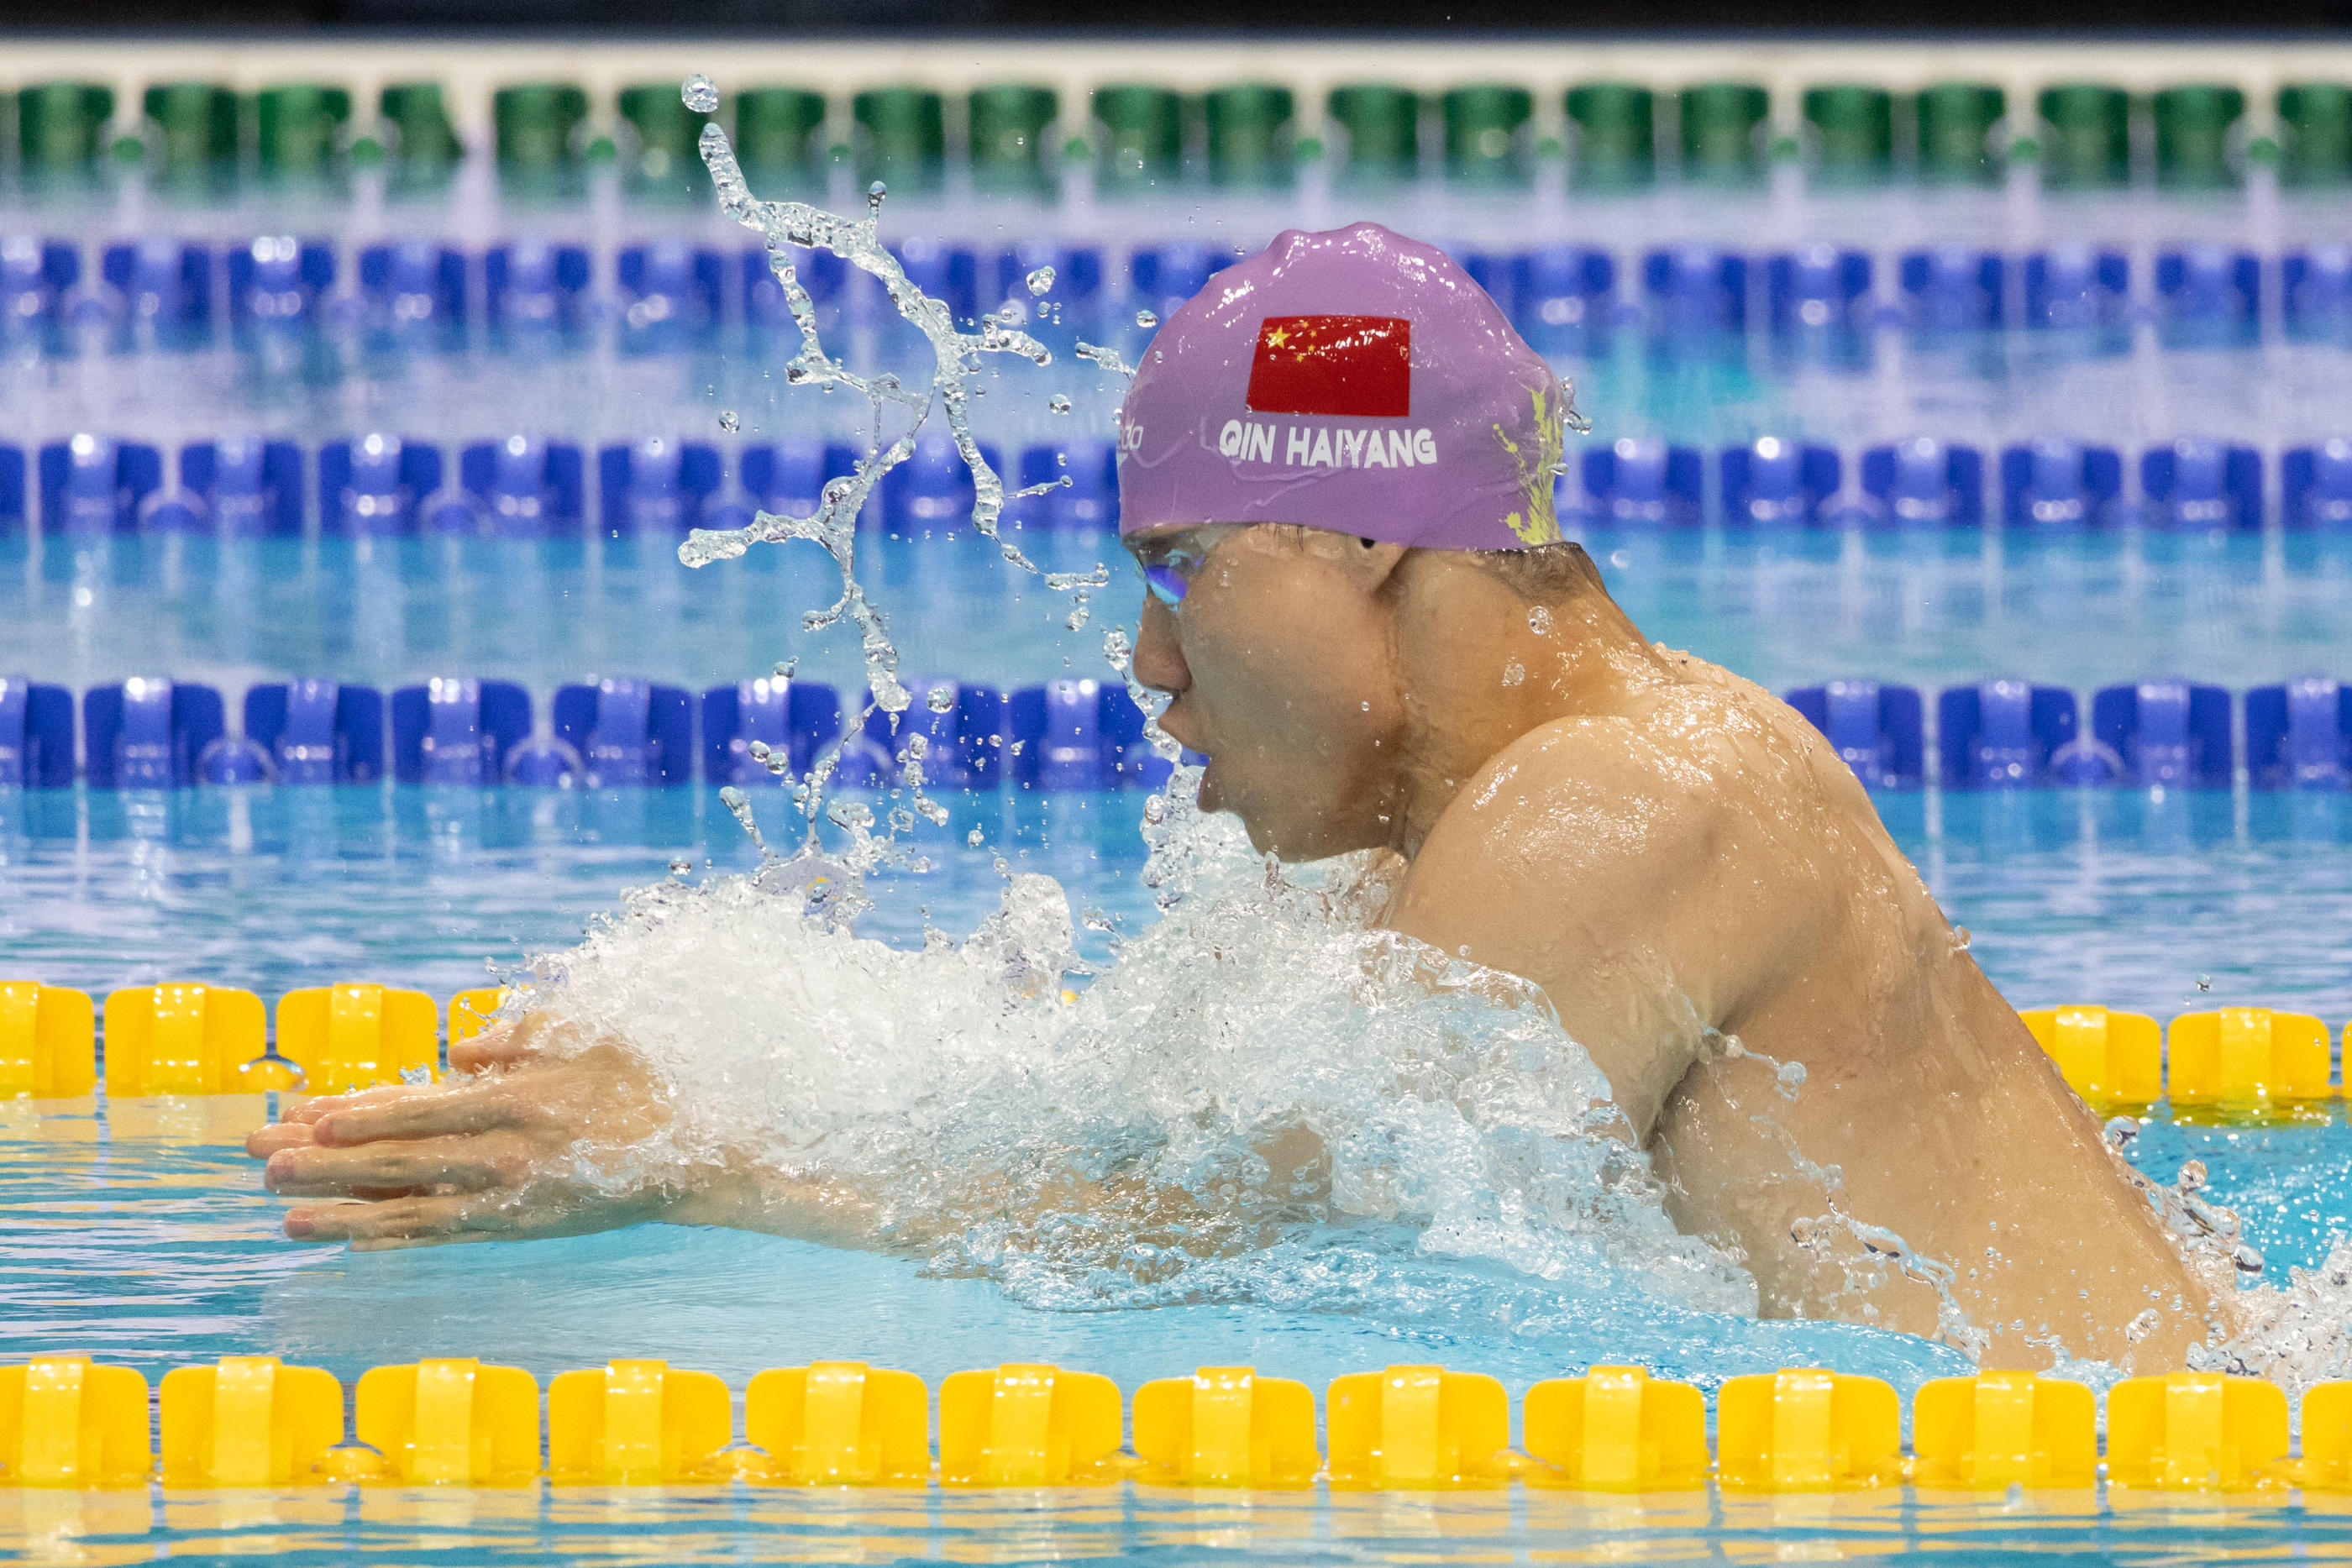 Elu nageur de l'année en 2023 après son record du monde du 200m brasse, le Chinois Qin Haiyang fait partie des nageurs concernés. Photo by Icon sport